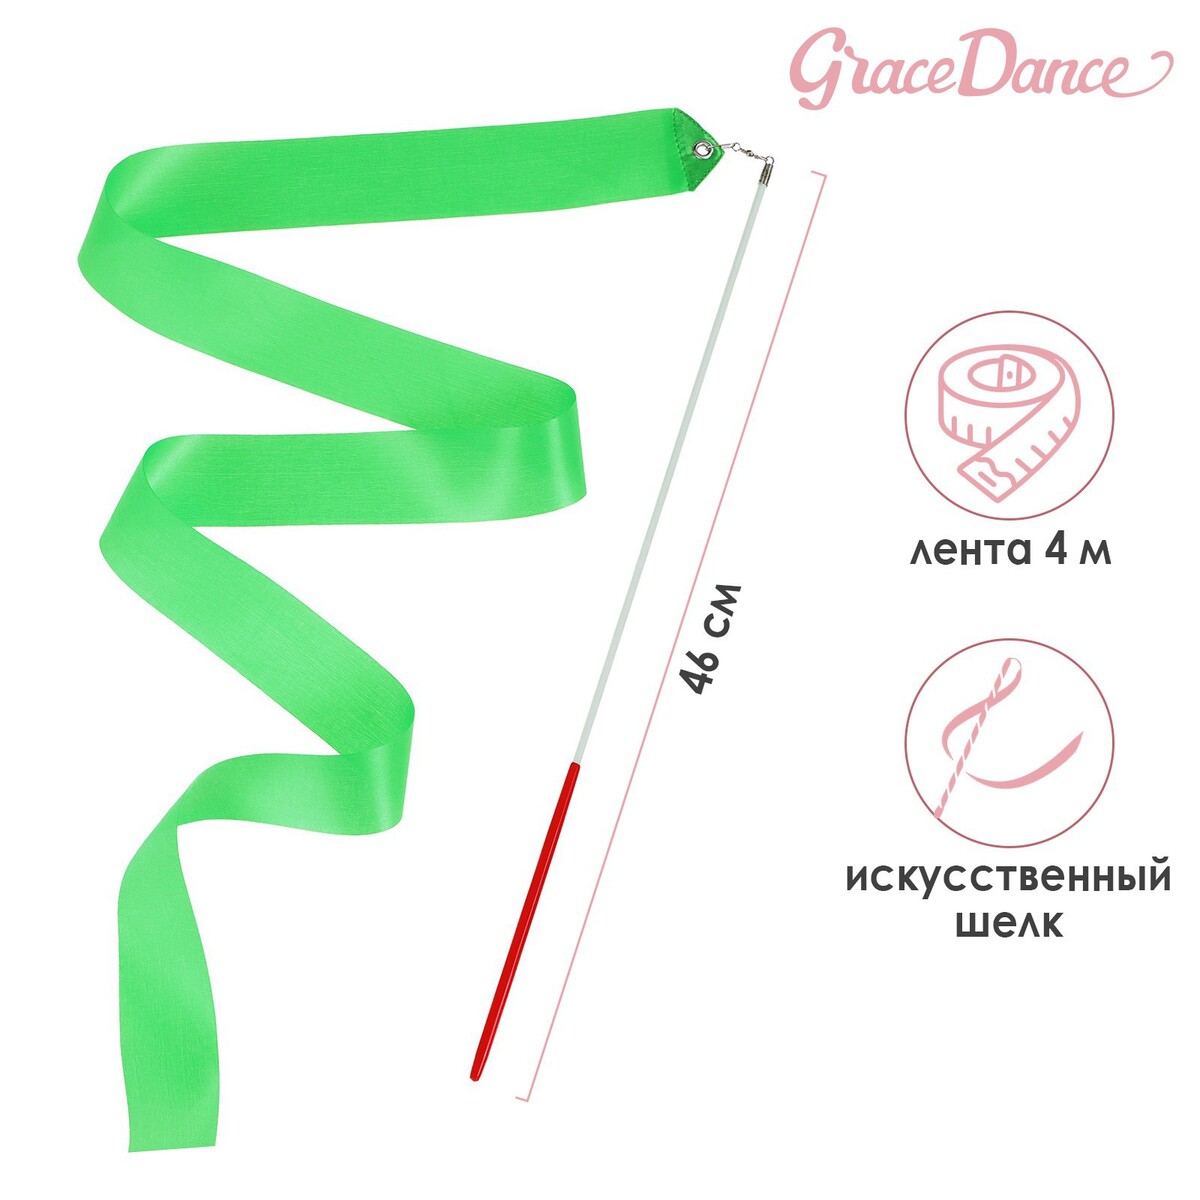 Лента для художественной гимнастики с палочкой grace dance, 4 м, цвет зеленый лента фиксации rockbros для перевозки и хранения велосипедов зеленый rb 51210071002